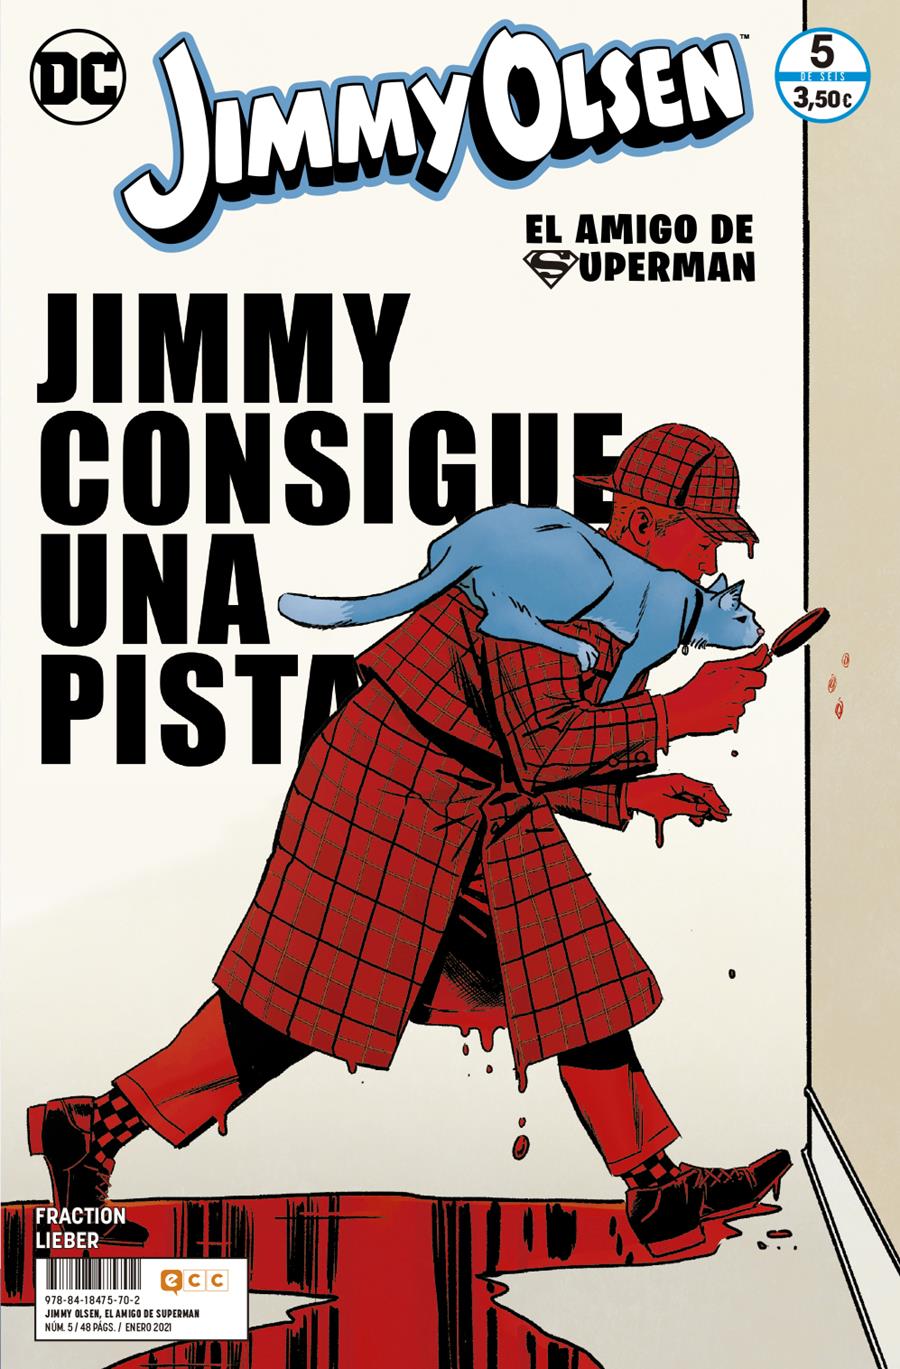 Jimmy Olsen, el amigo de Superman núm. 5 de 6 | N0121-ECC26 | Matt Fraction / Steve Lieber | Terra de Còmic - Tu tienda de cómics online especializada en cómics, manga y merchandising